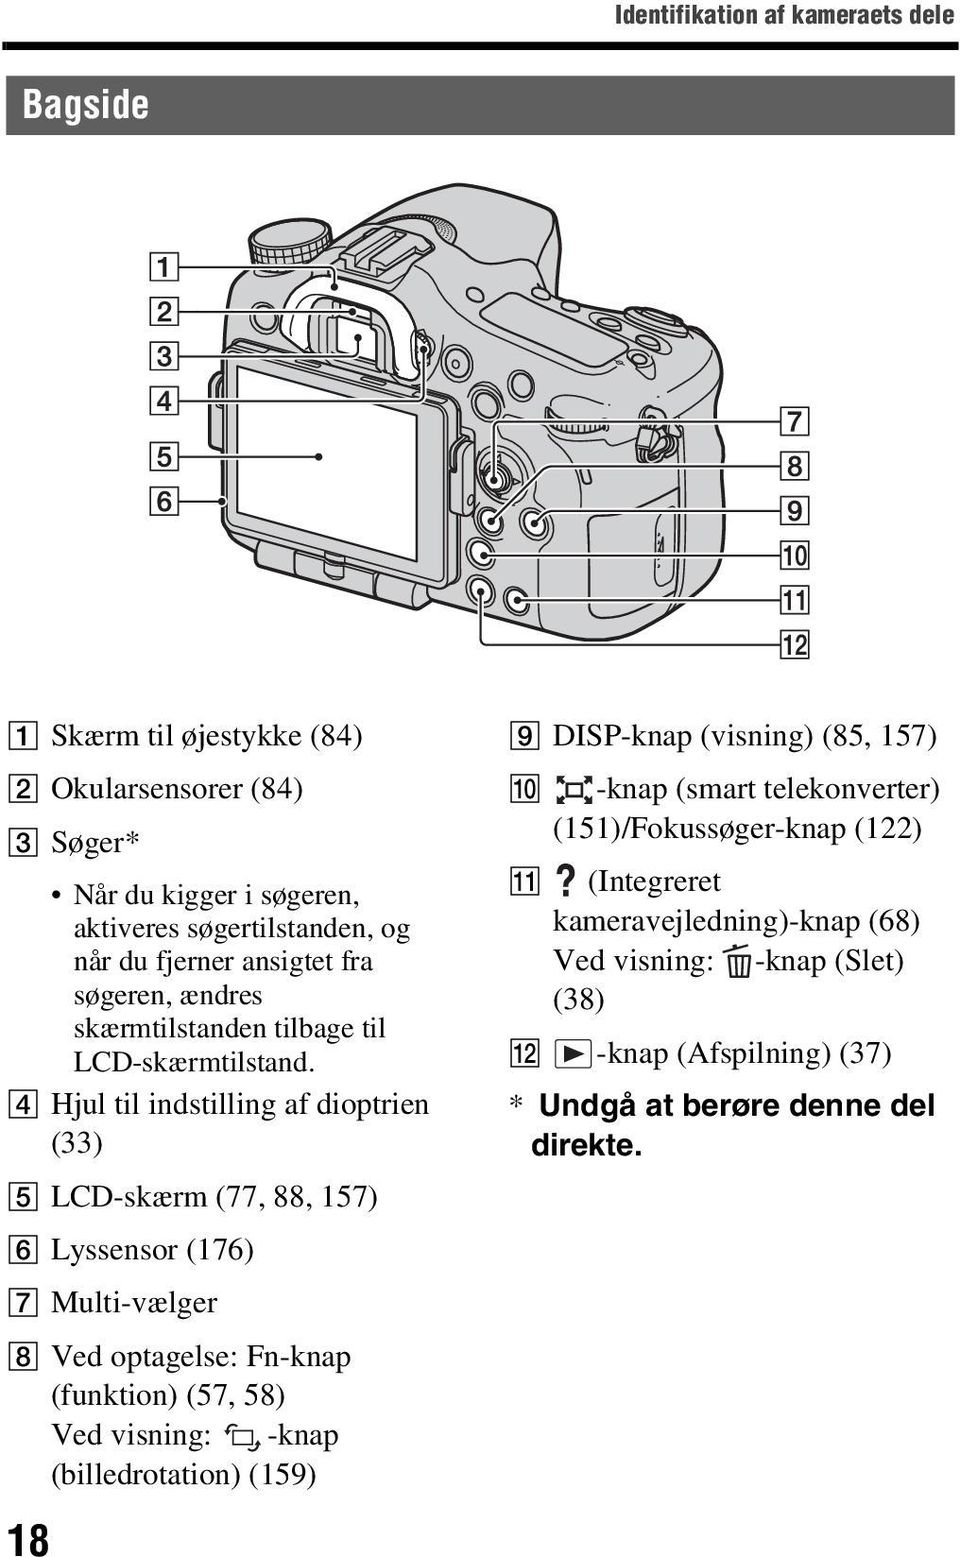 D Hjul til indstilling af dioptrien (33) E LCD-skærm (77, 88, 157) F Lyssensor (176) G Multi-vælger H Ved optagelse: Fn-knap (funktion) (57, 58) Ved visning: -knap